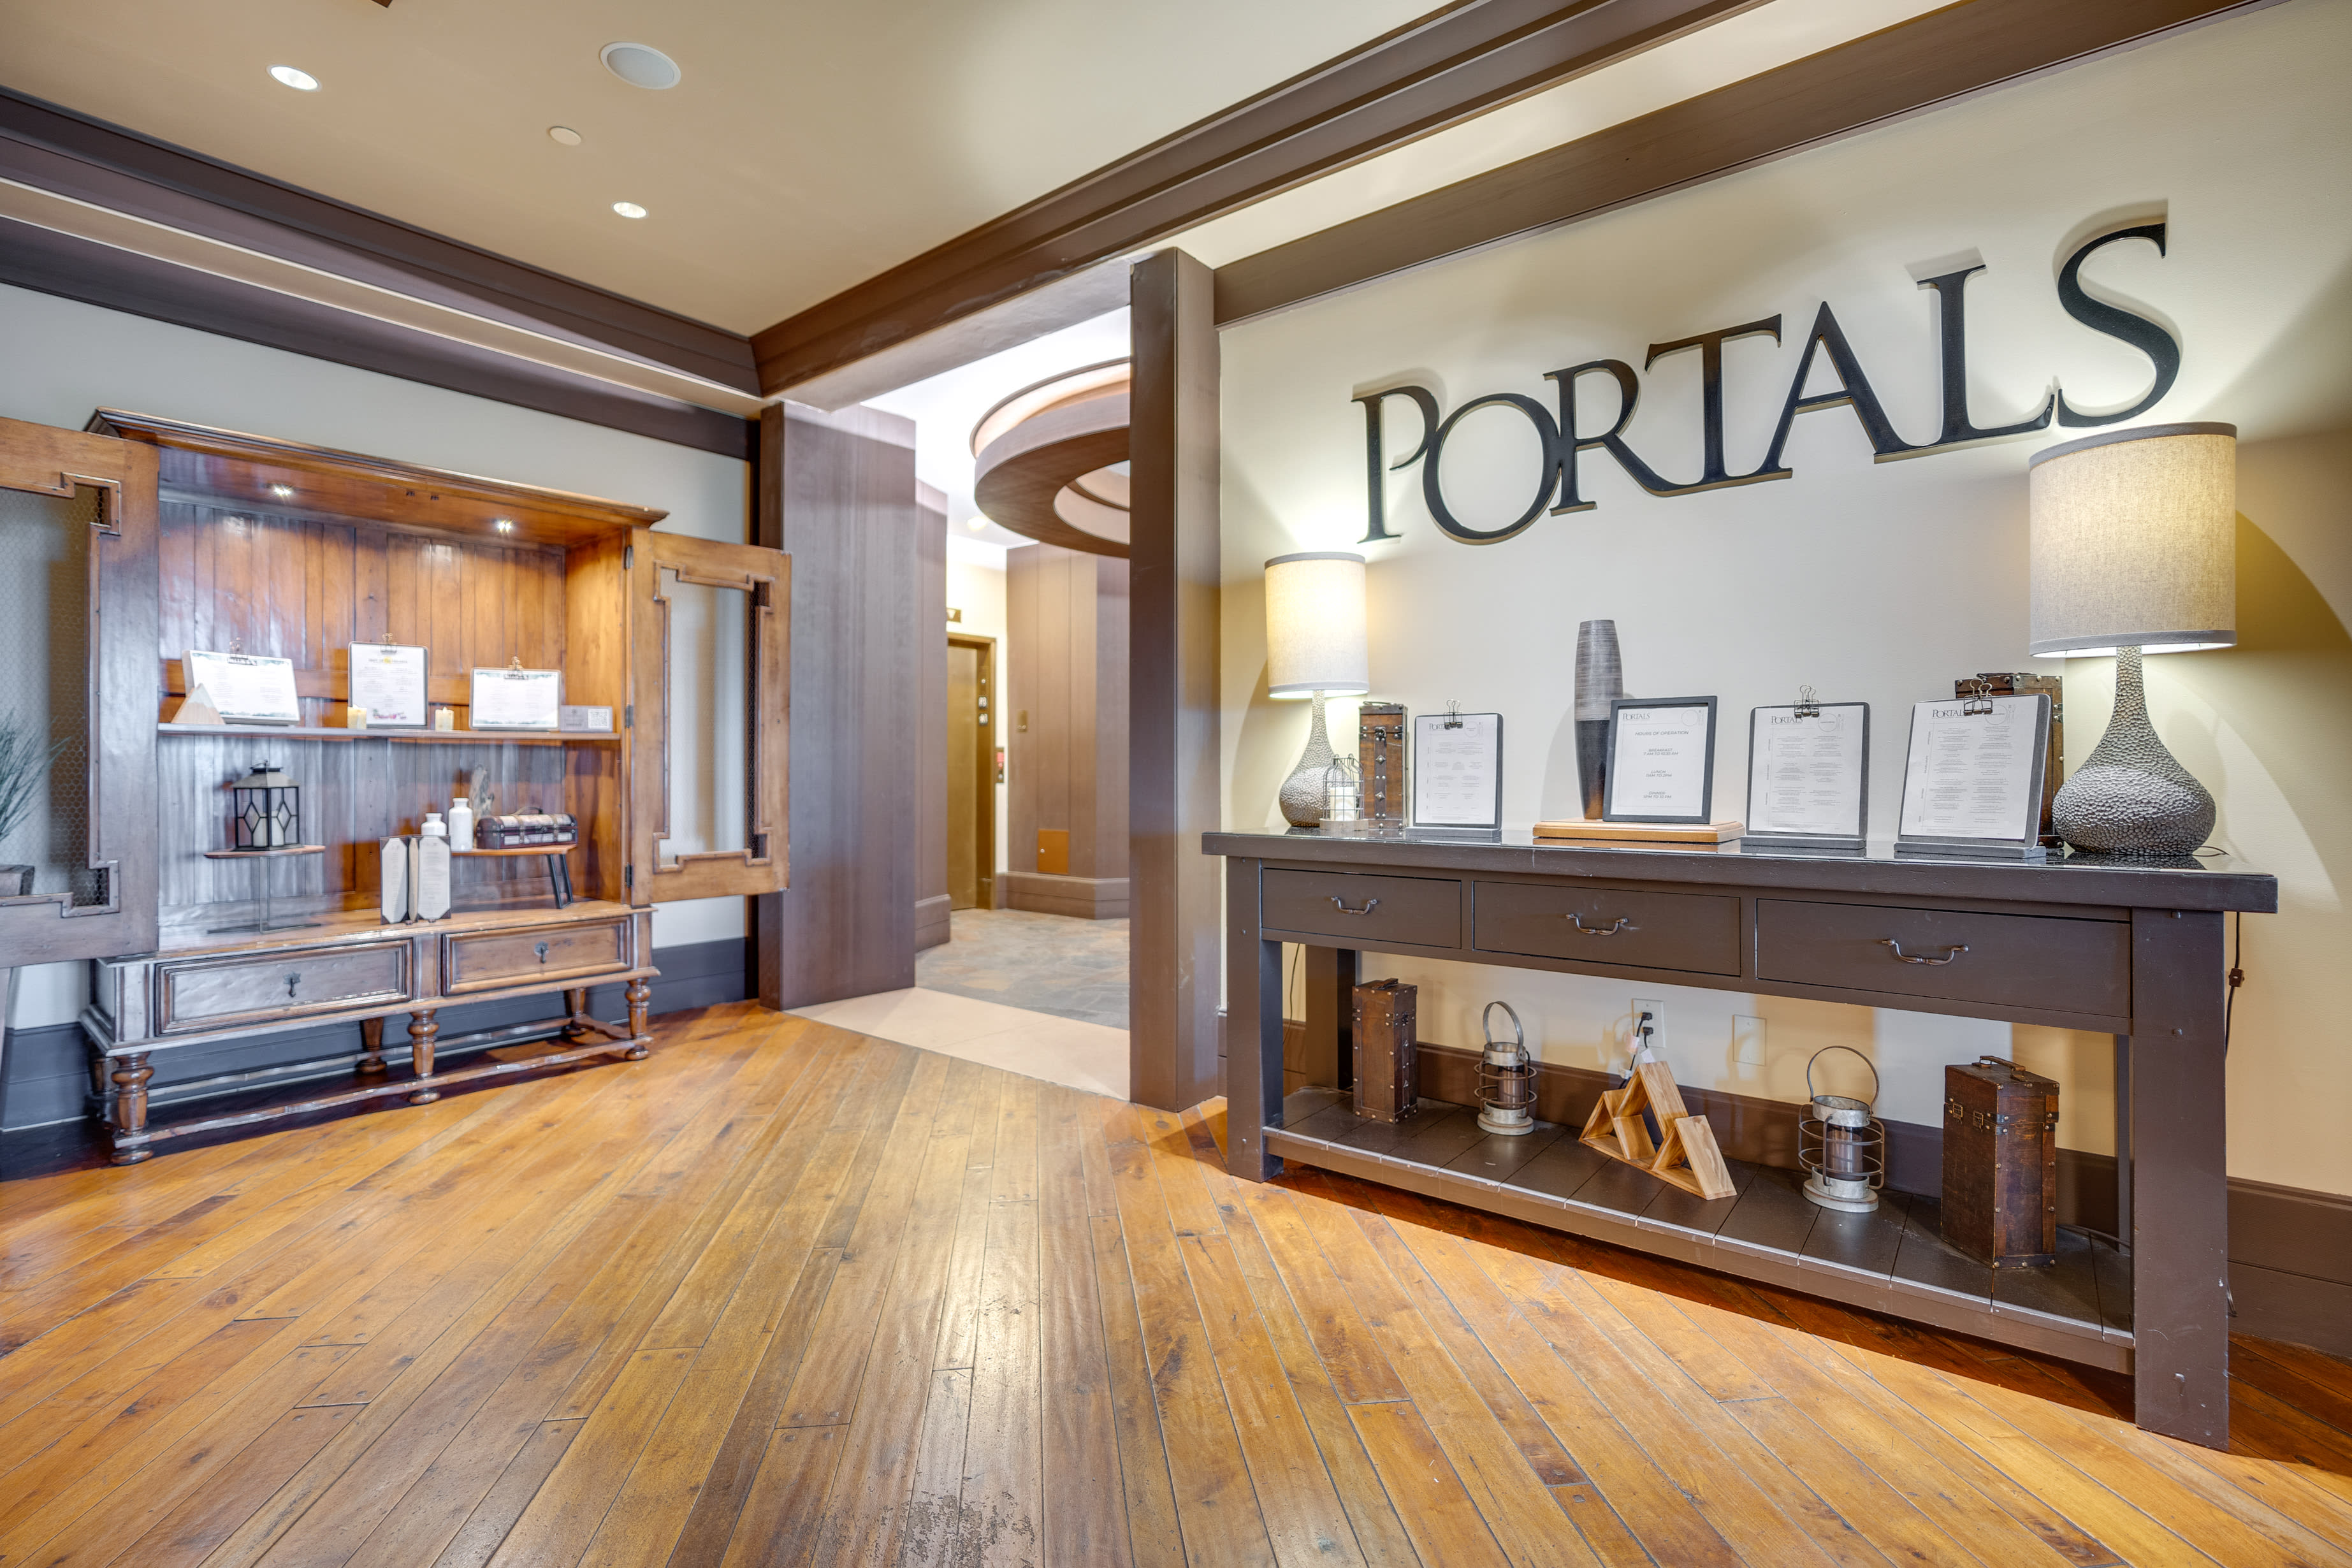 Portals Restaurant